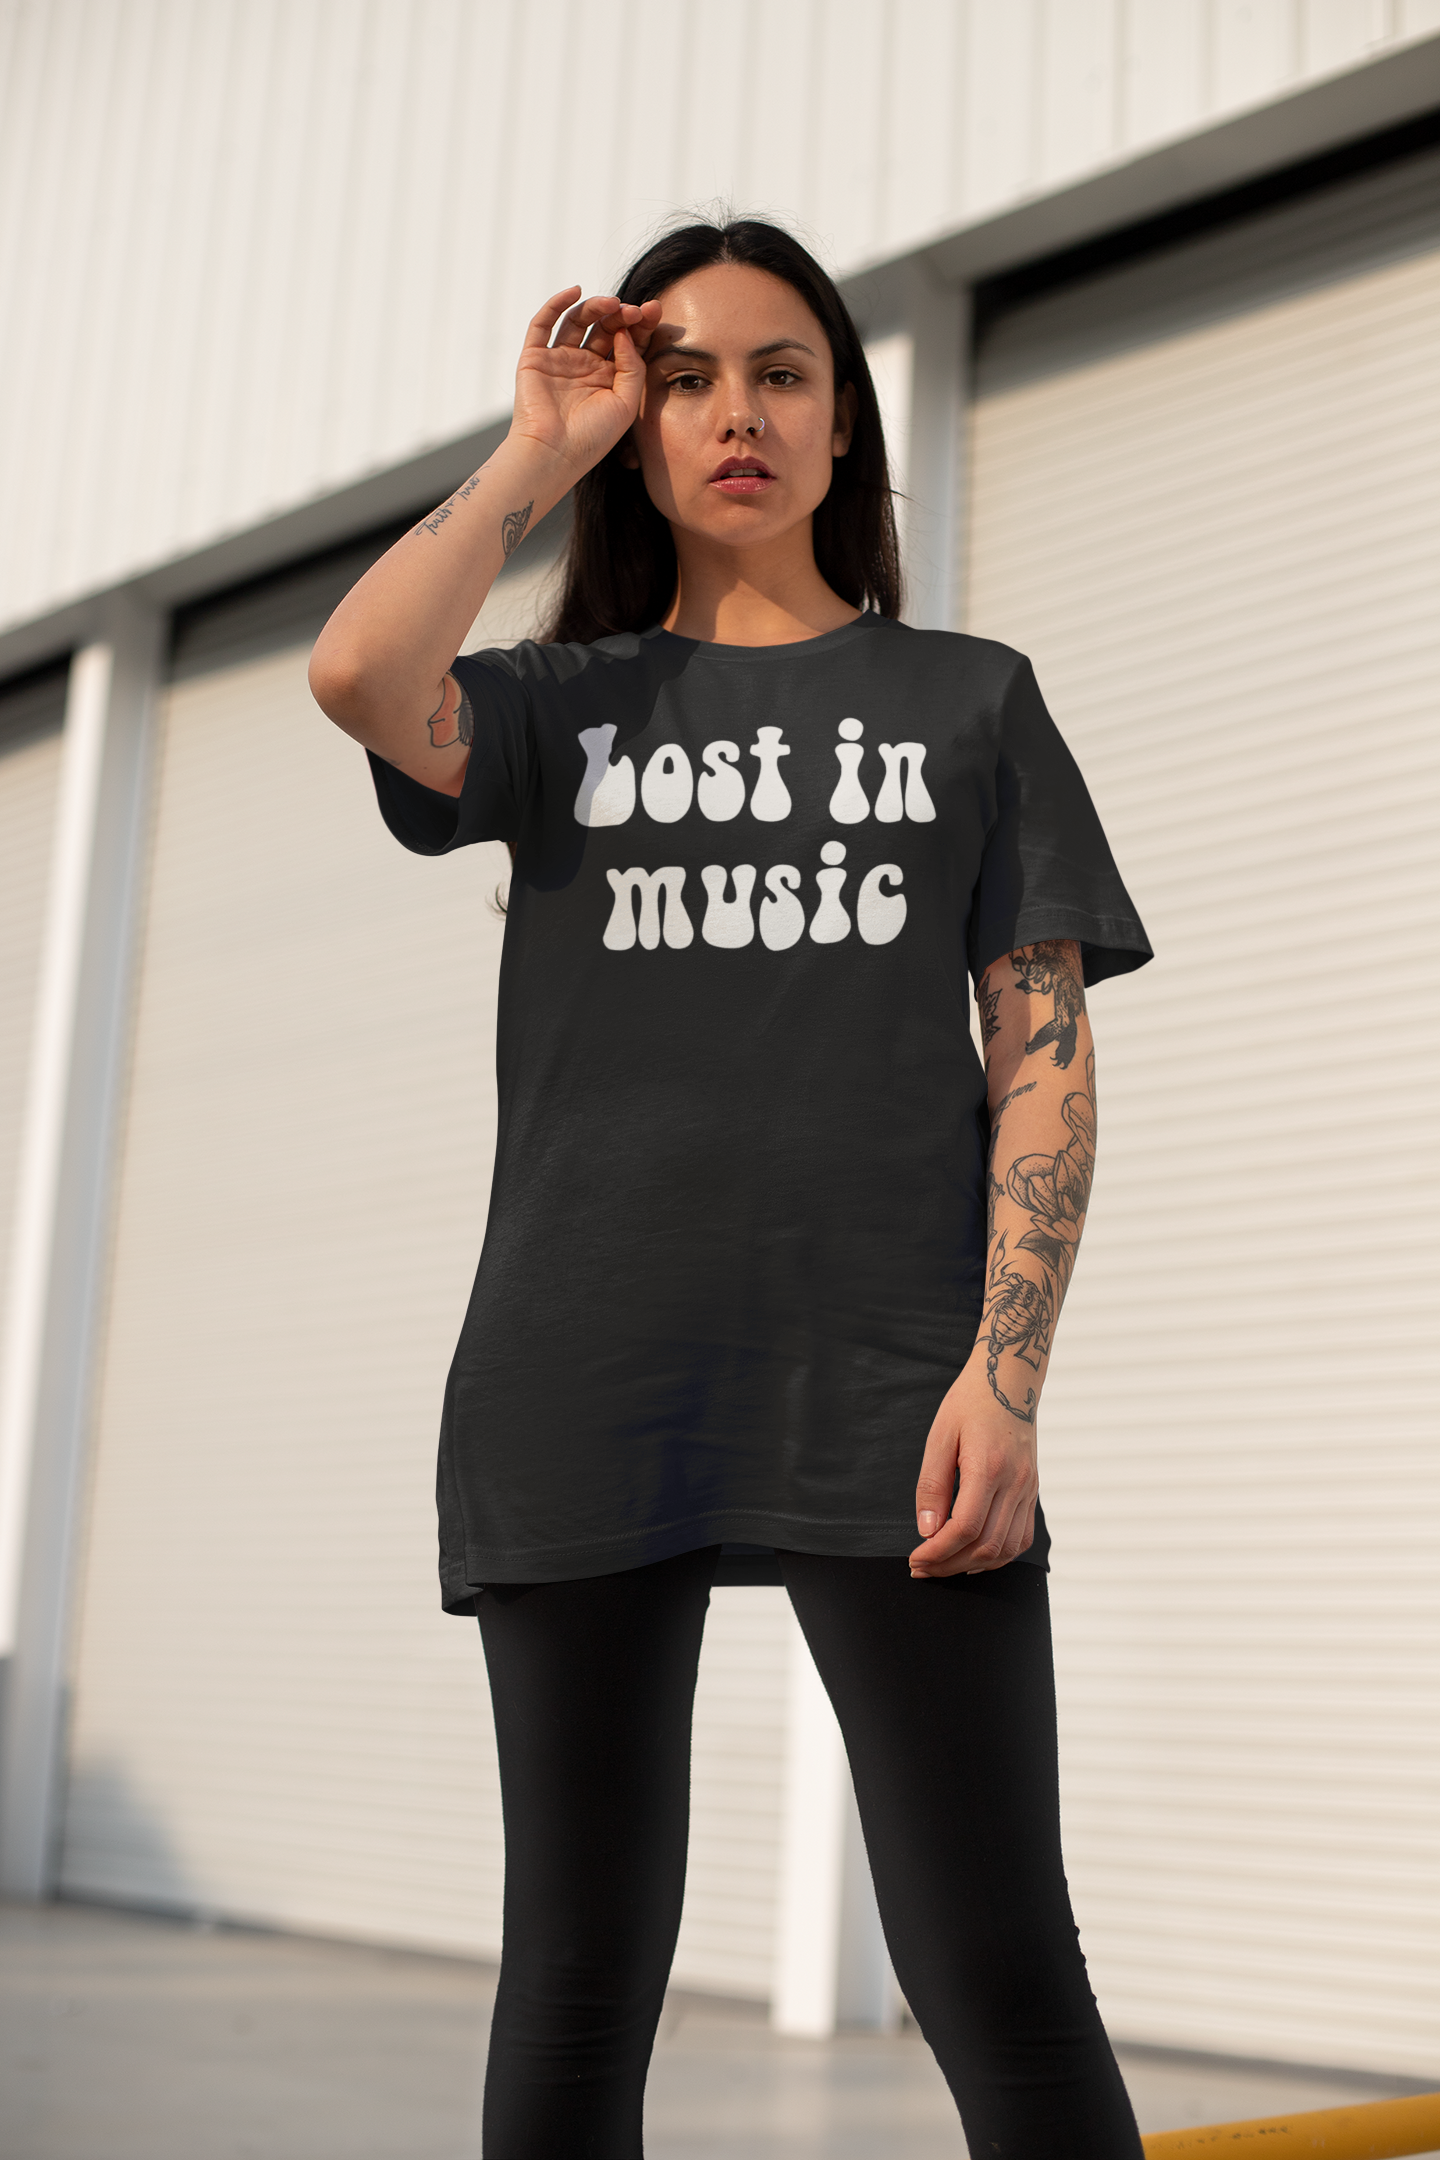 Lost In Music Camiseta de algodón orgánico unisex estampada estilo años 70